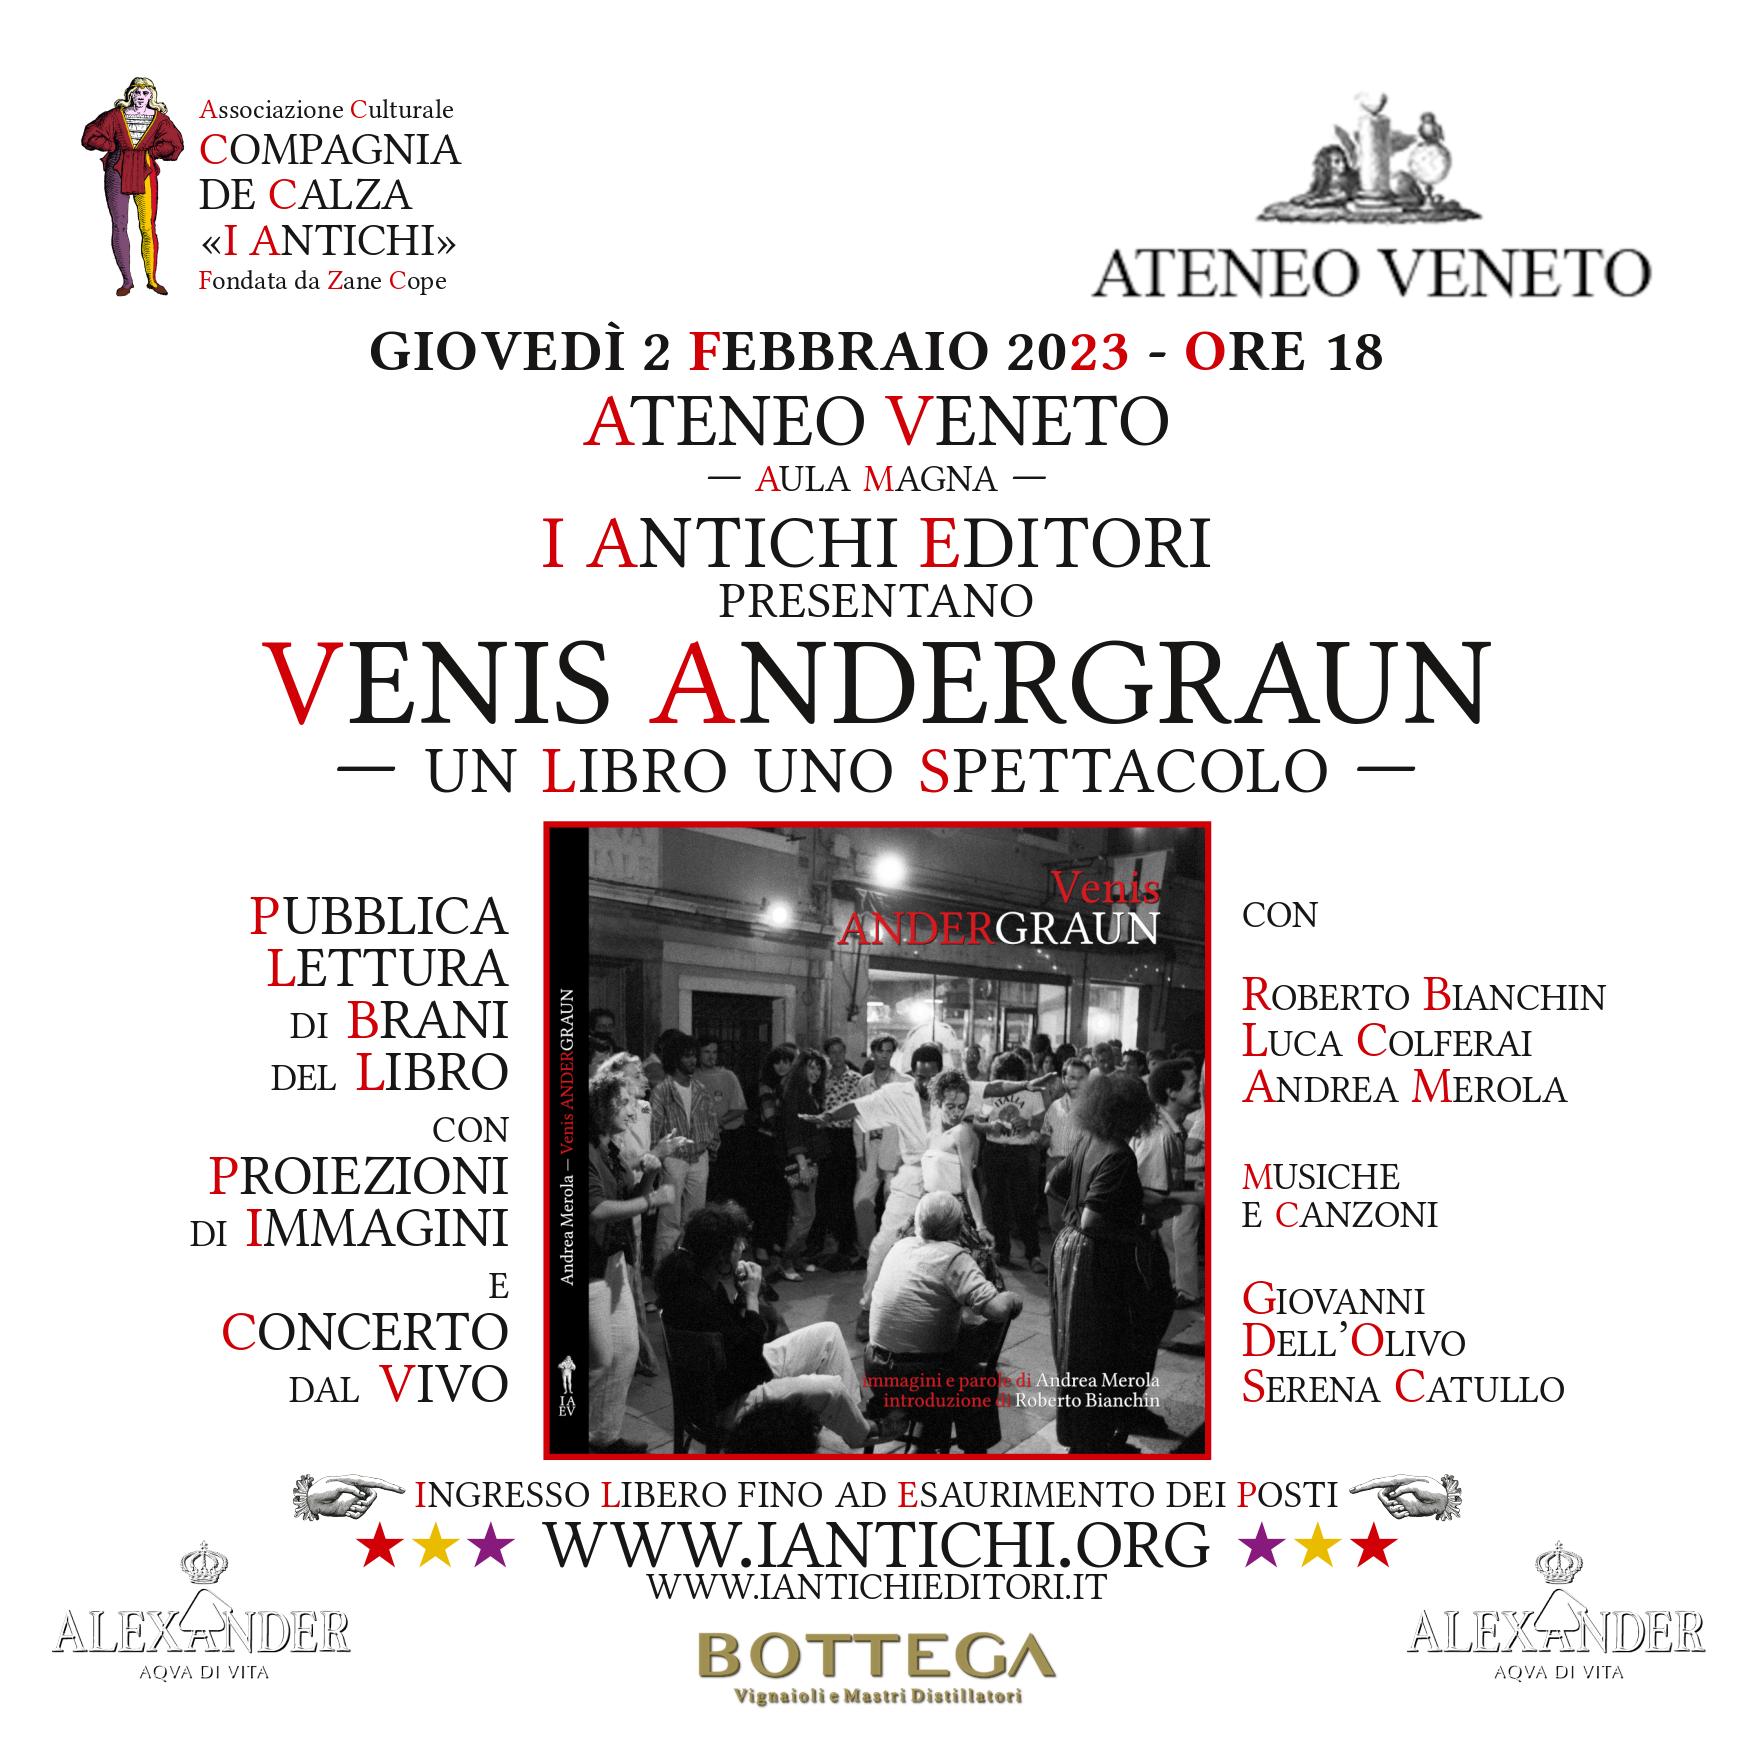 Venis Andergraun all'Ateneo Veneto, giovedì 2 febbraio 2023 ore 18.